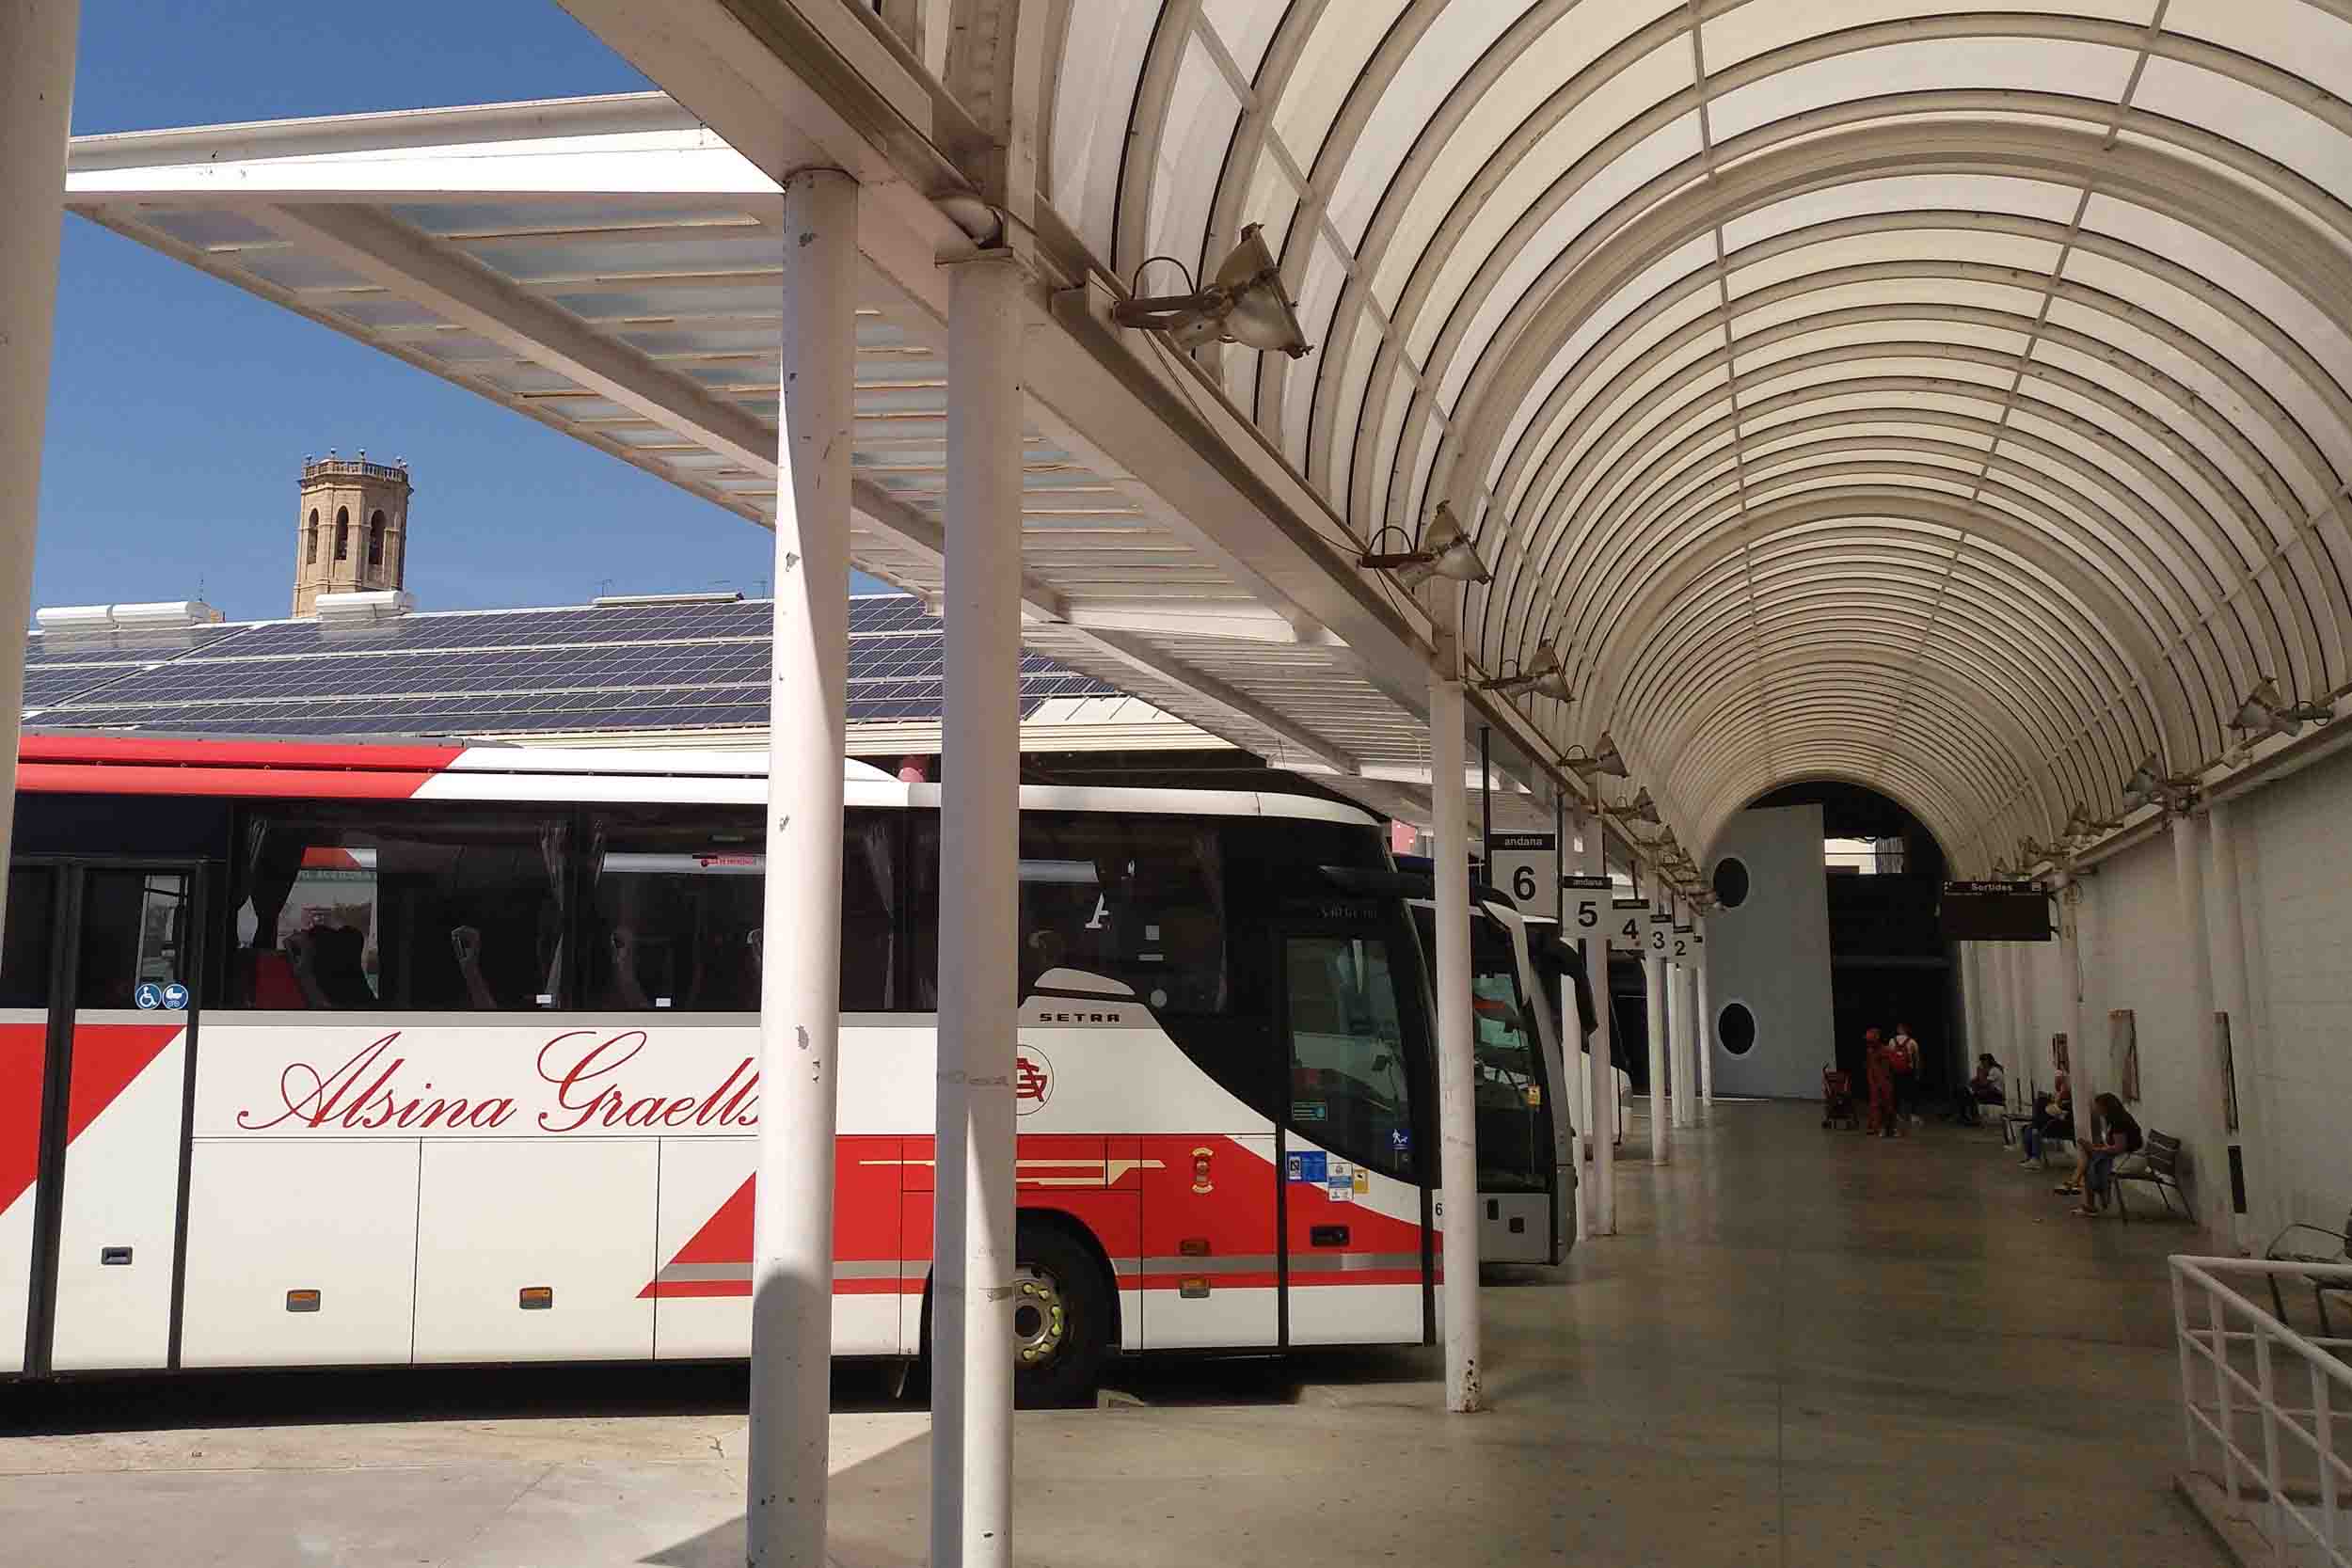 Les obres de la nova estació d’autobusos de Tàrrega, a licitació durant el primer trimestre de l’any 2020